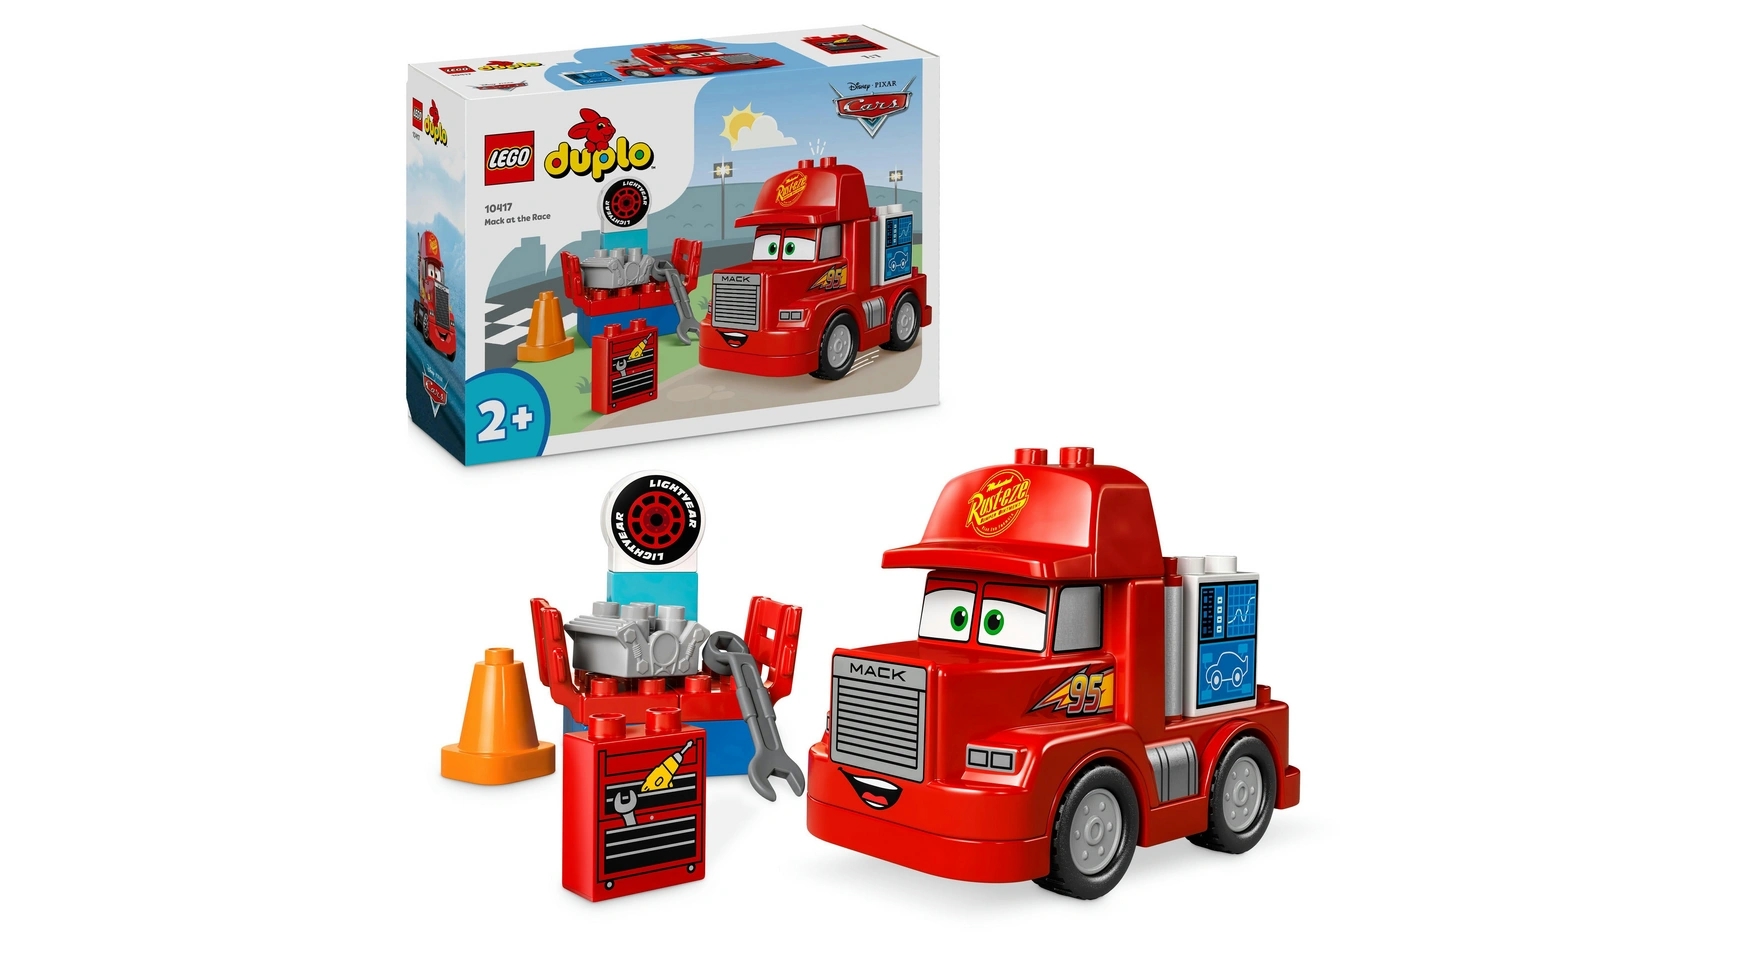 Lego DUPLO Гоночный грузовик Mack от Disney и Pixar Cars модели автомобилей из металлического сплава disney pixar тачки 2 3